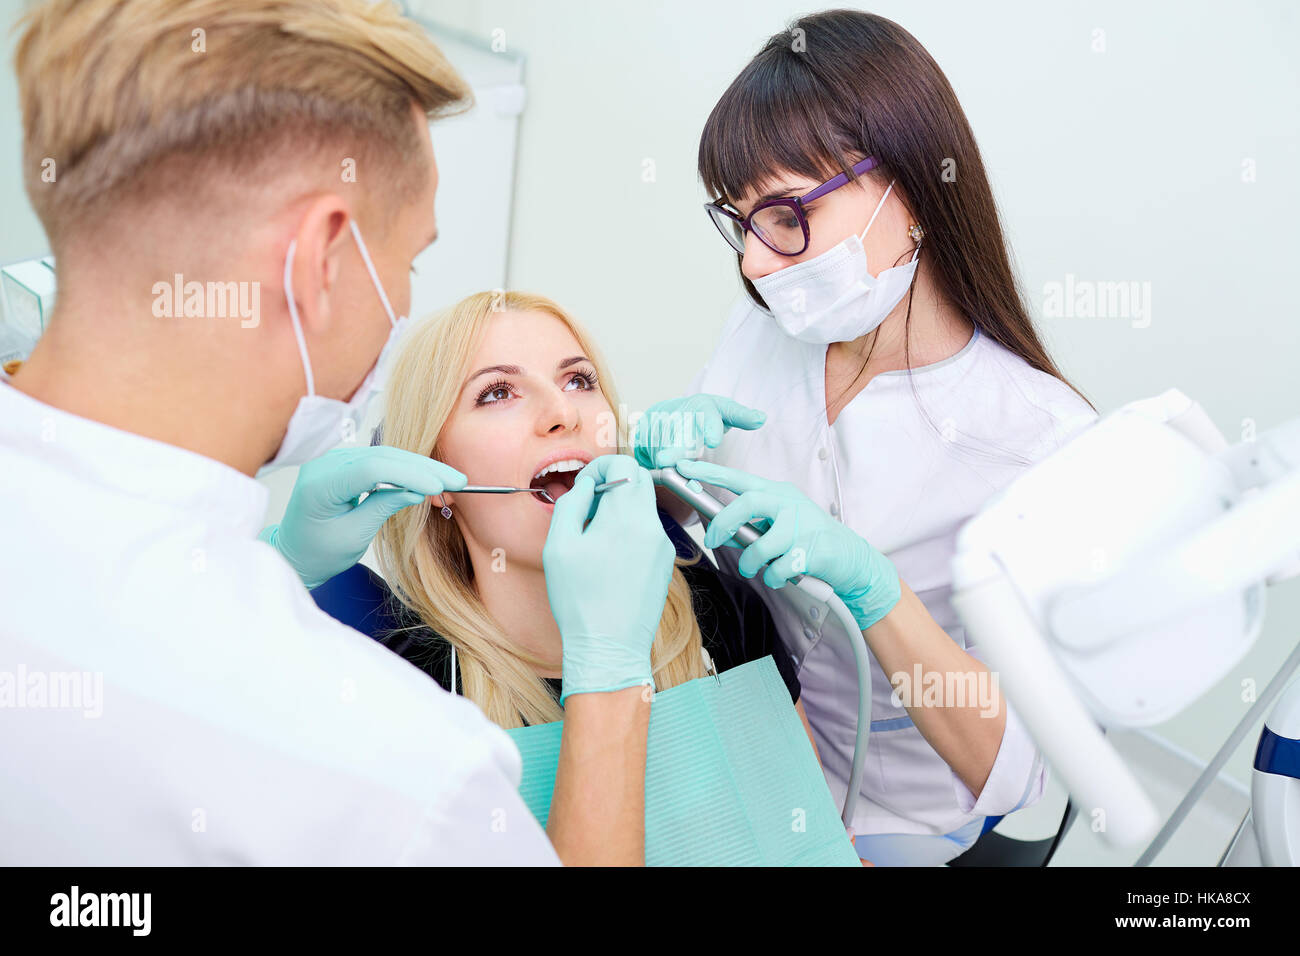 Le patient est une fille avec une bouche ouverte au dentiste dans les cabinets dentaires Banque D'Images